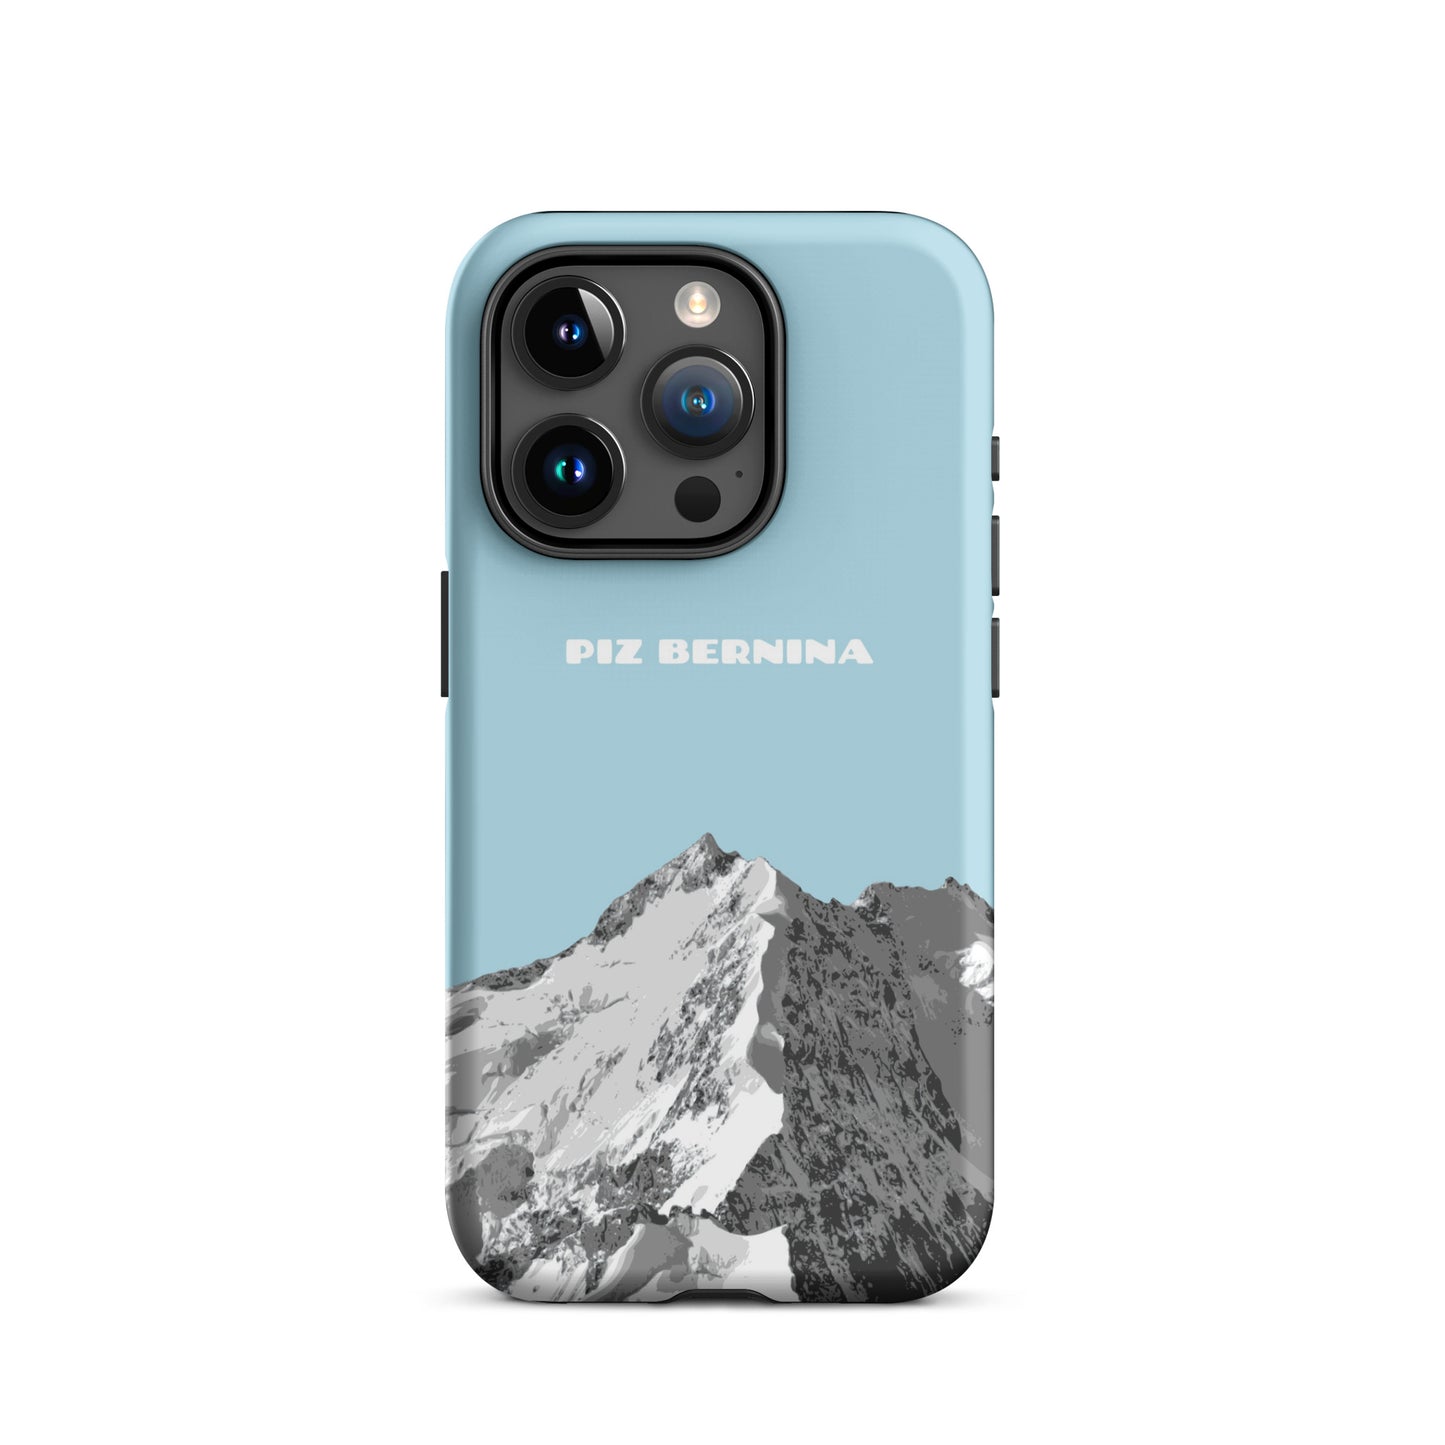 Hülle für das iPhone 15 Pro von Apple in der Farbe Hellblau, dass den Piz Bernina in Graubünden zeigt.